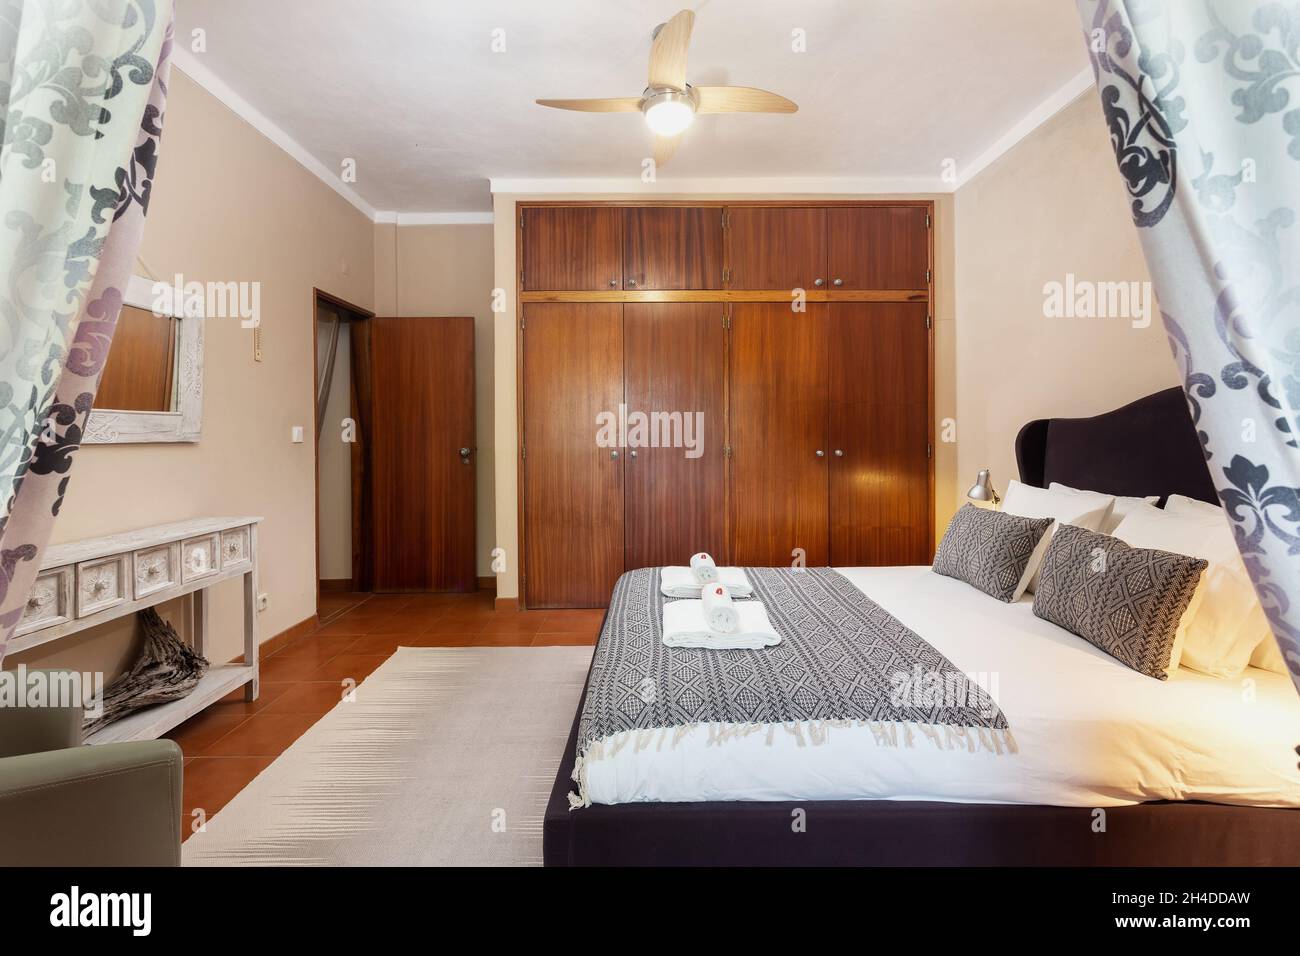 Camera da letto in classico stile mediterraneo tradizionale con letto matrimoniale. Con uno specchio e asciugamani con dolci sul letto. Foto Stock